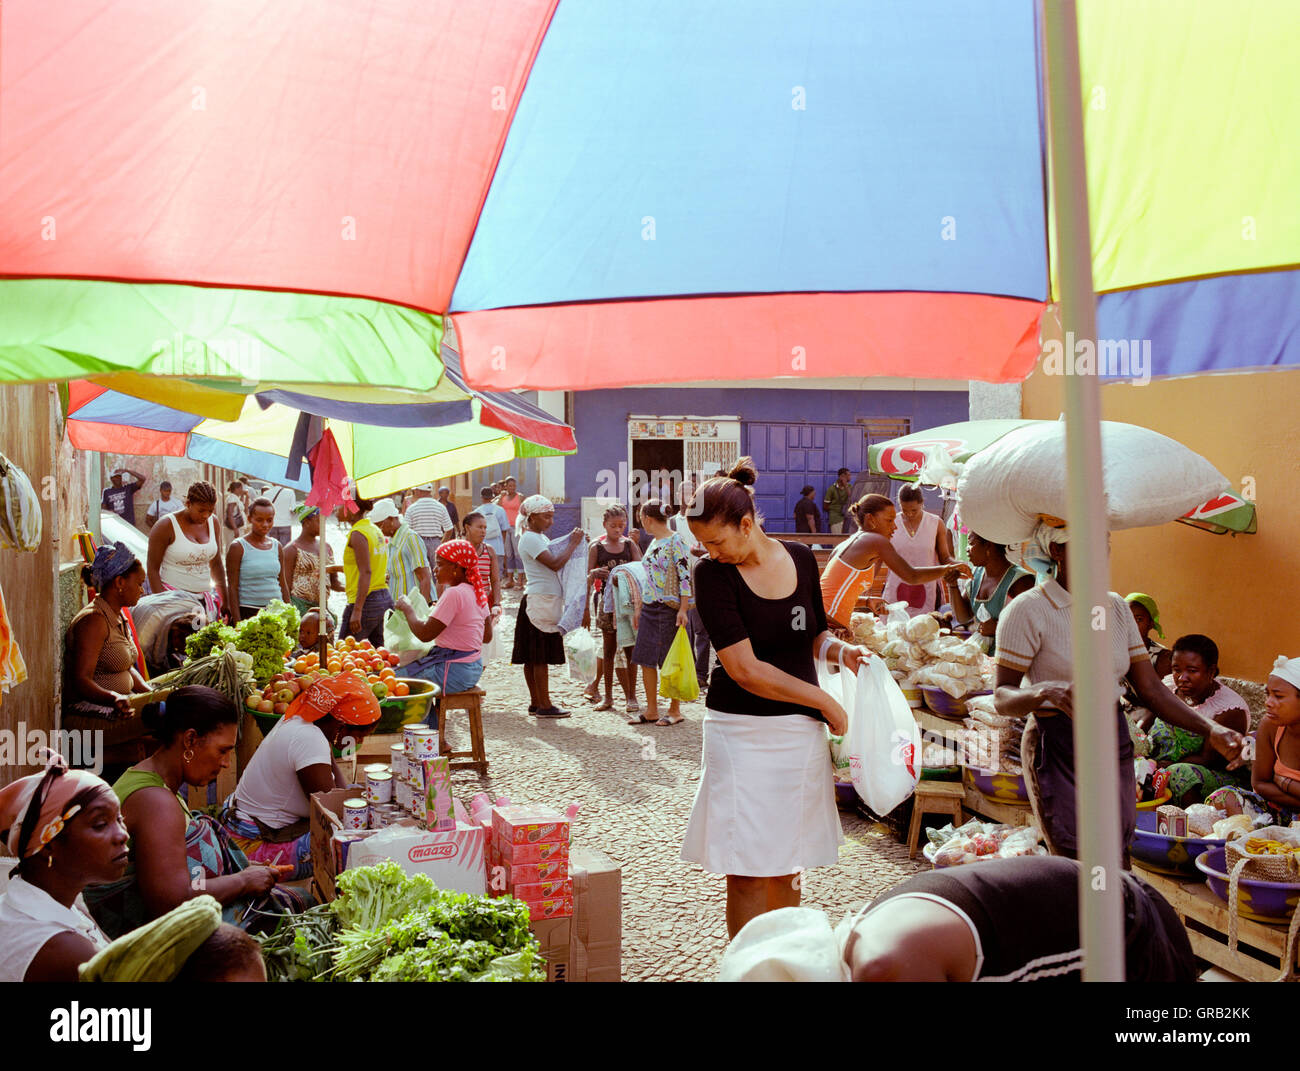 Eine Frau einkaufen bei Mercado de Prahia, ein Morgenmarkt in der Stadt Praia, Santiago, Kapverden, Afrika. Stockfoto